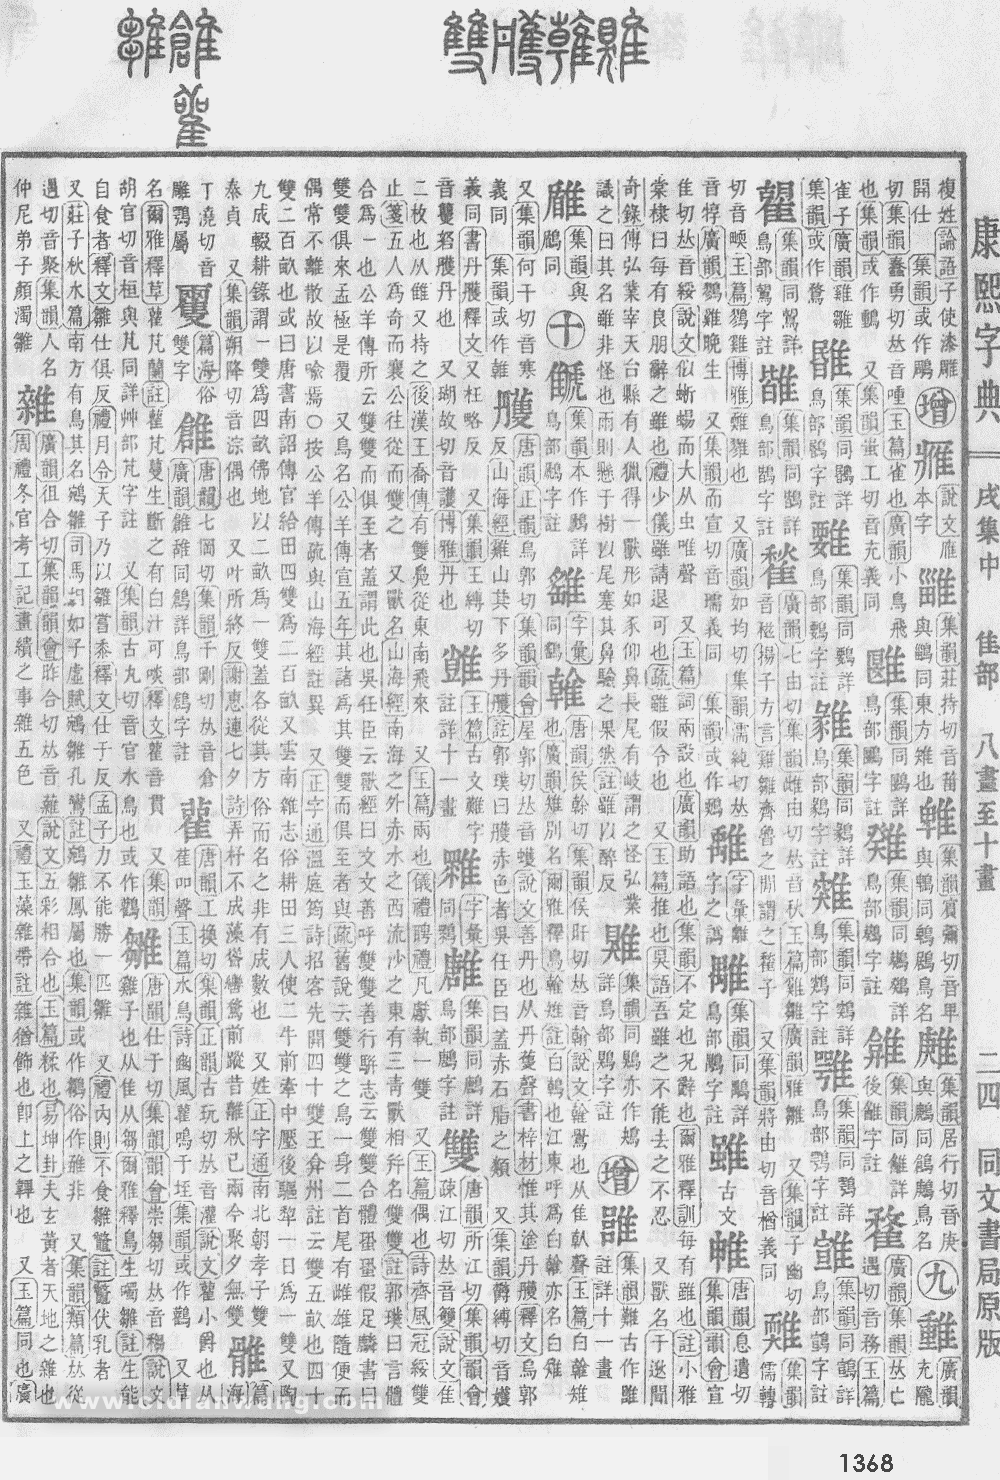 康熙字典掃描版第1368頁